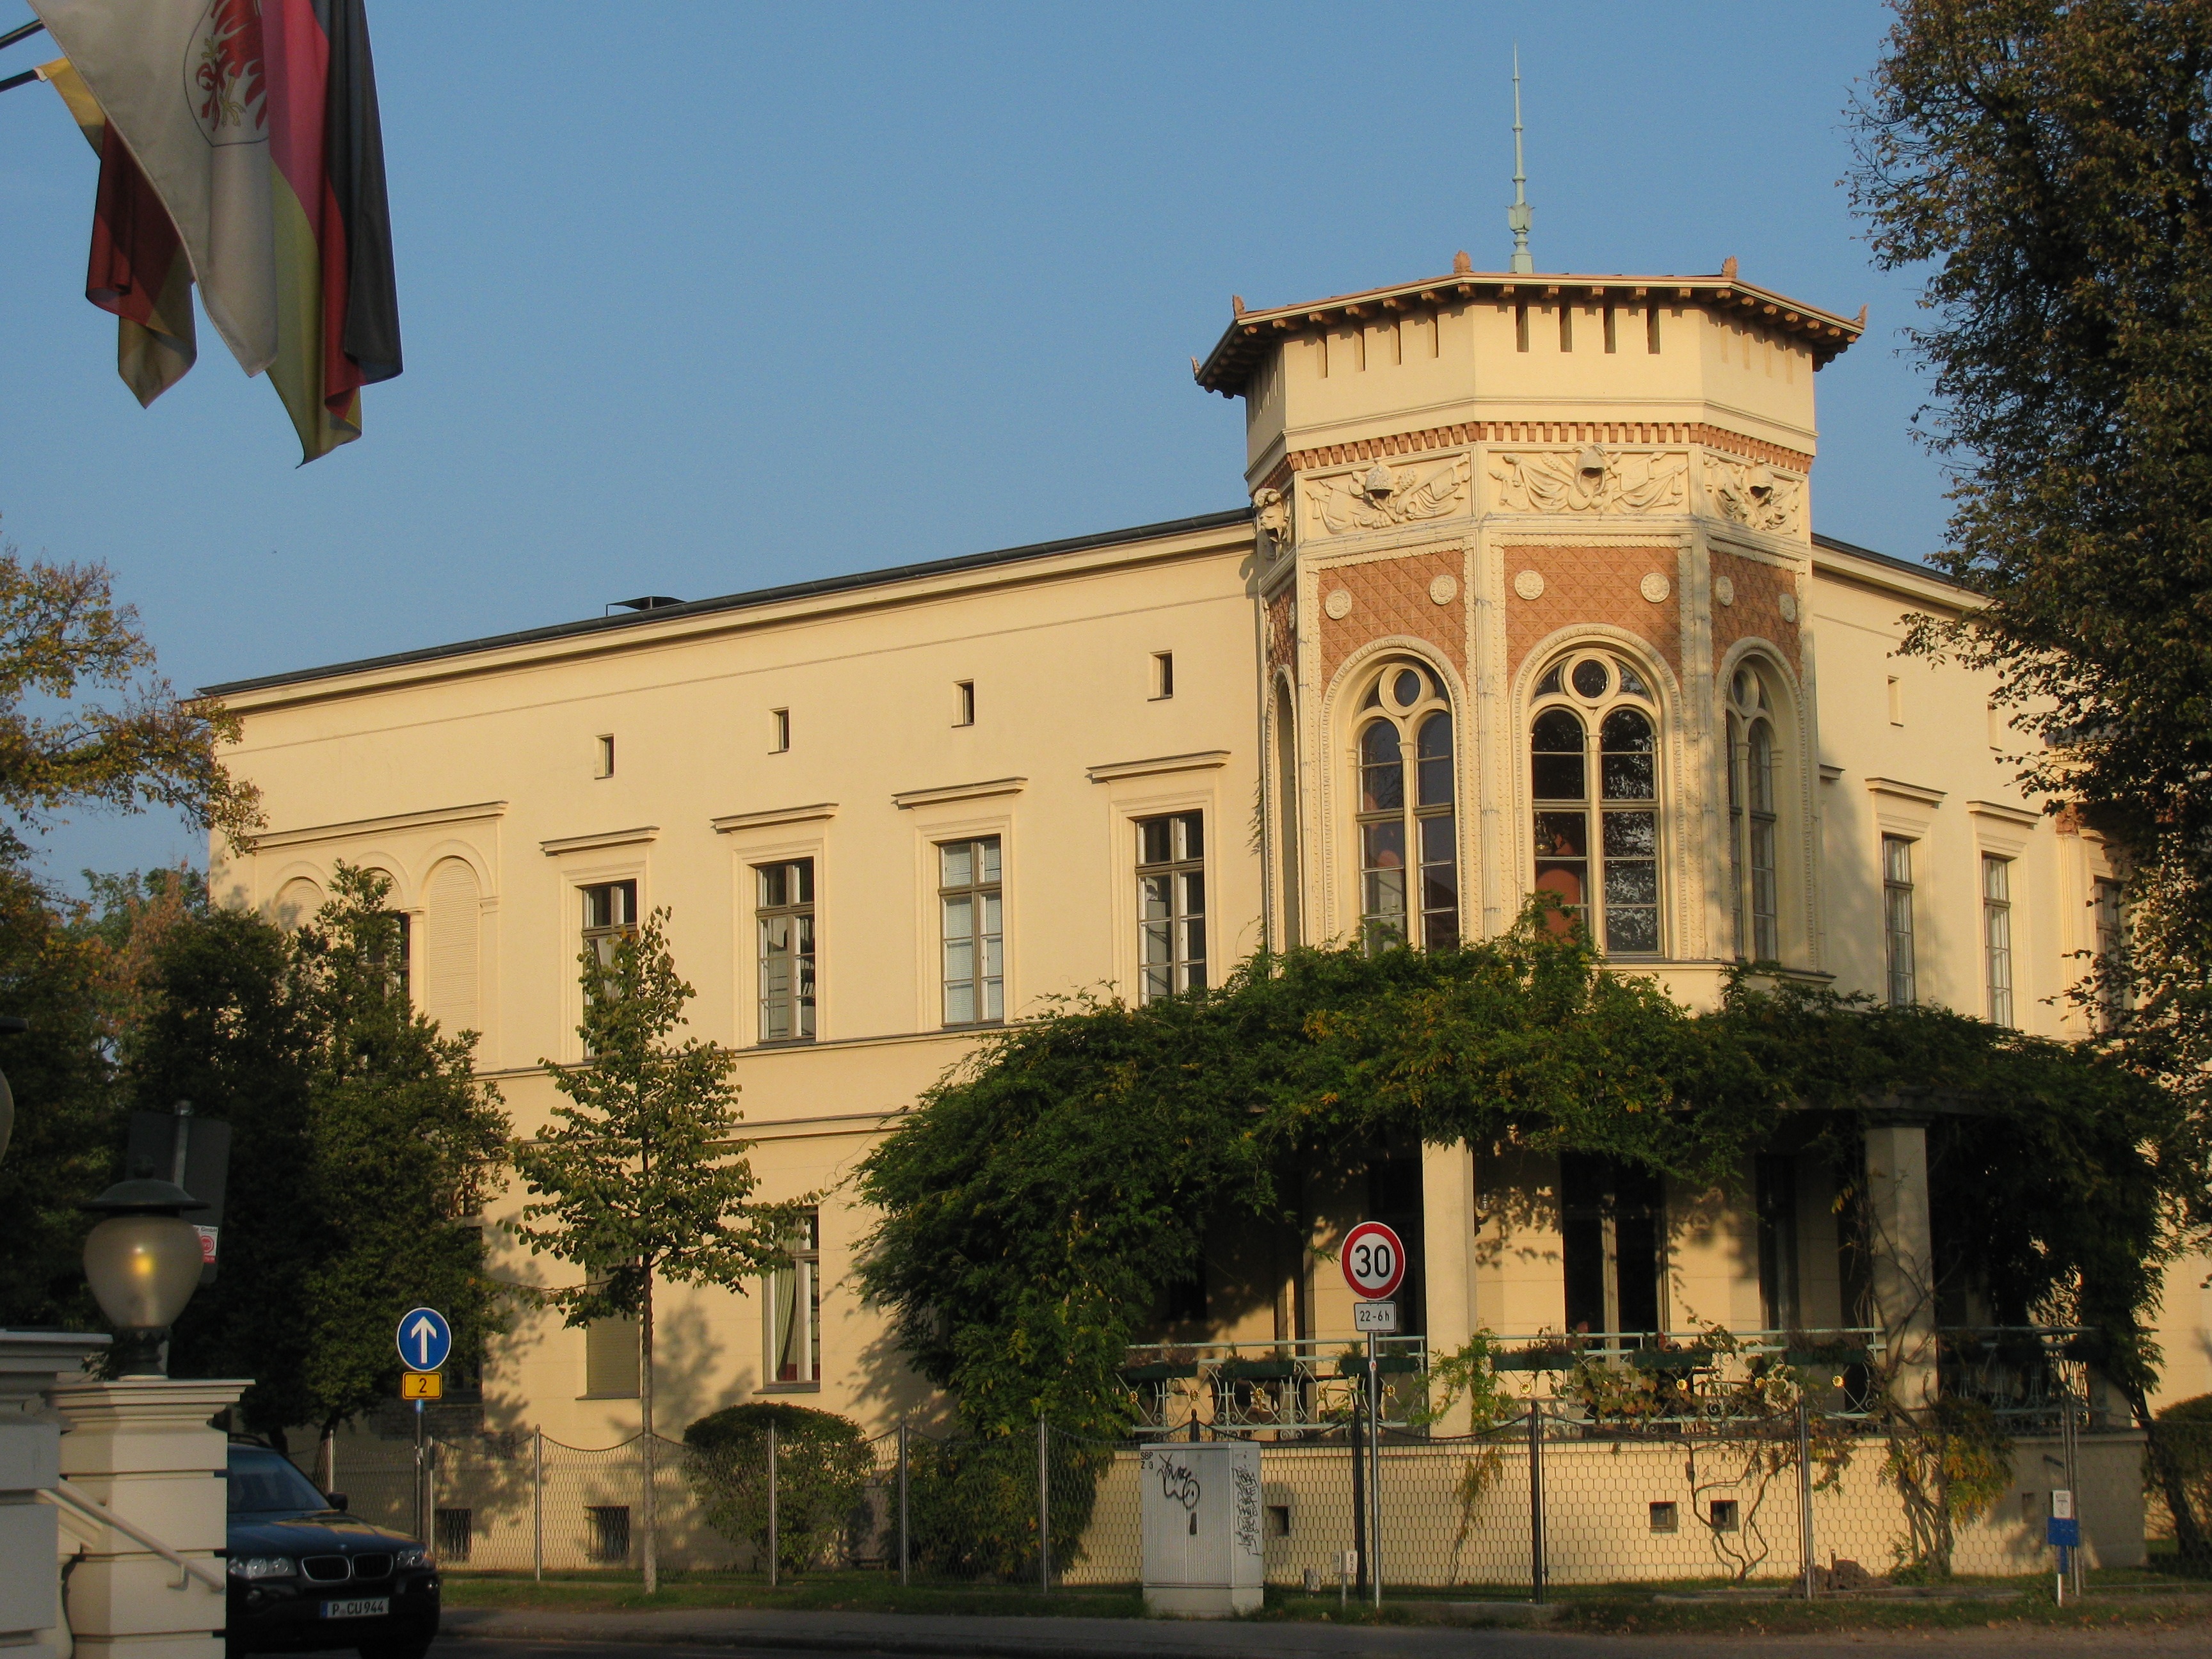 Die Villa von Haacke in Potsdam, Süd- bzw. Stadtseite.:) Okt. 2014.